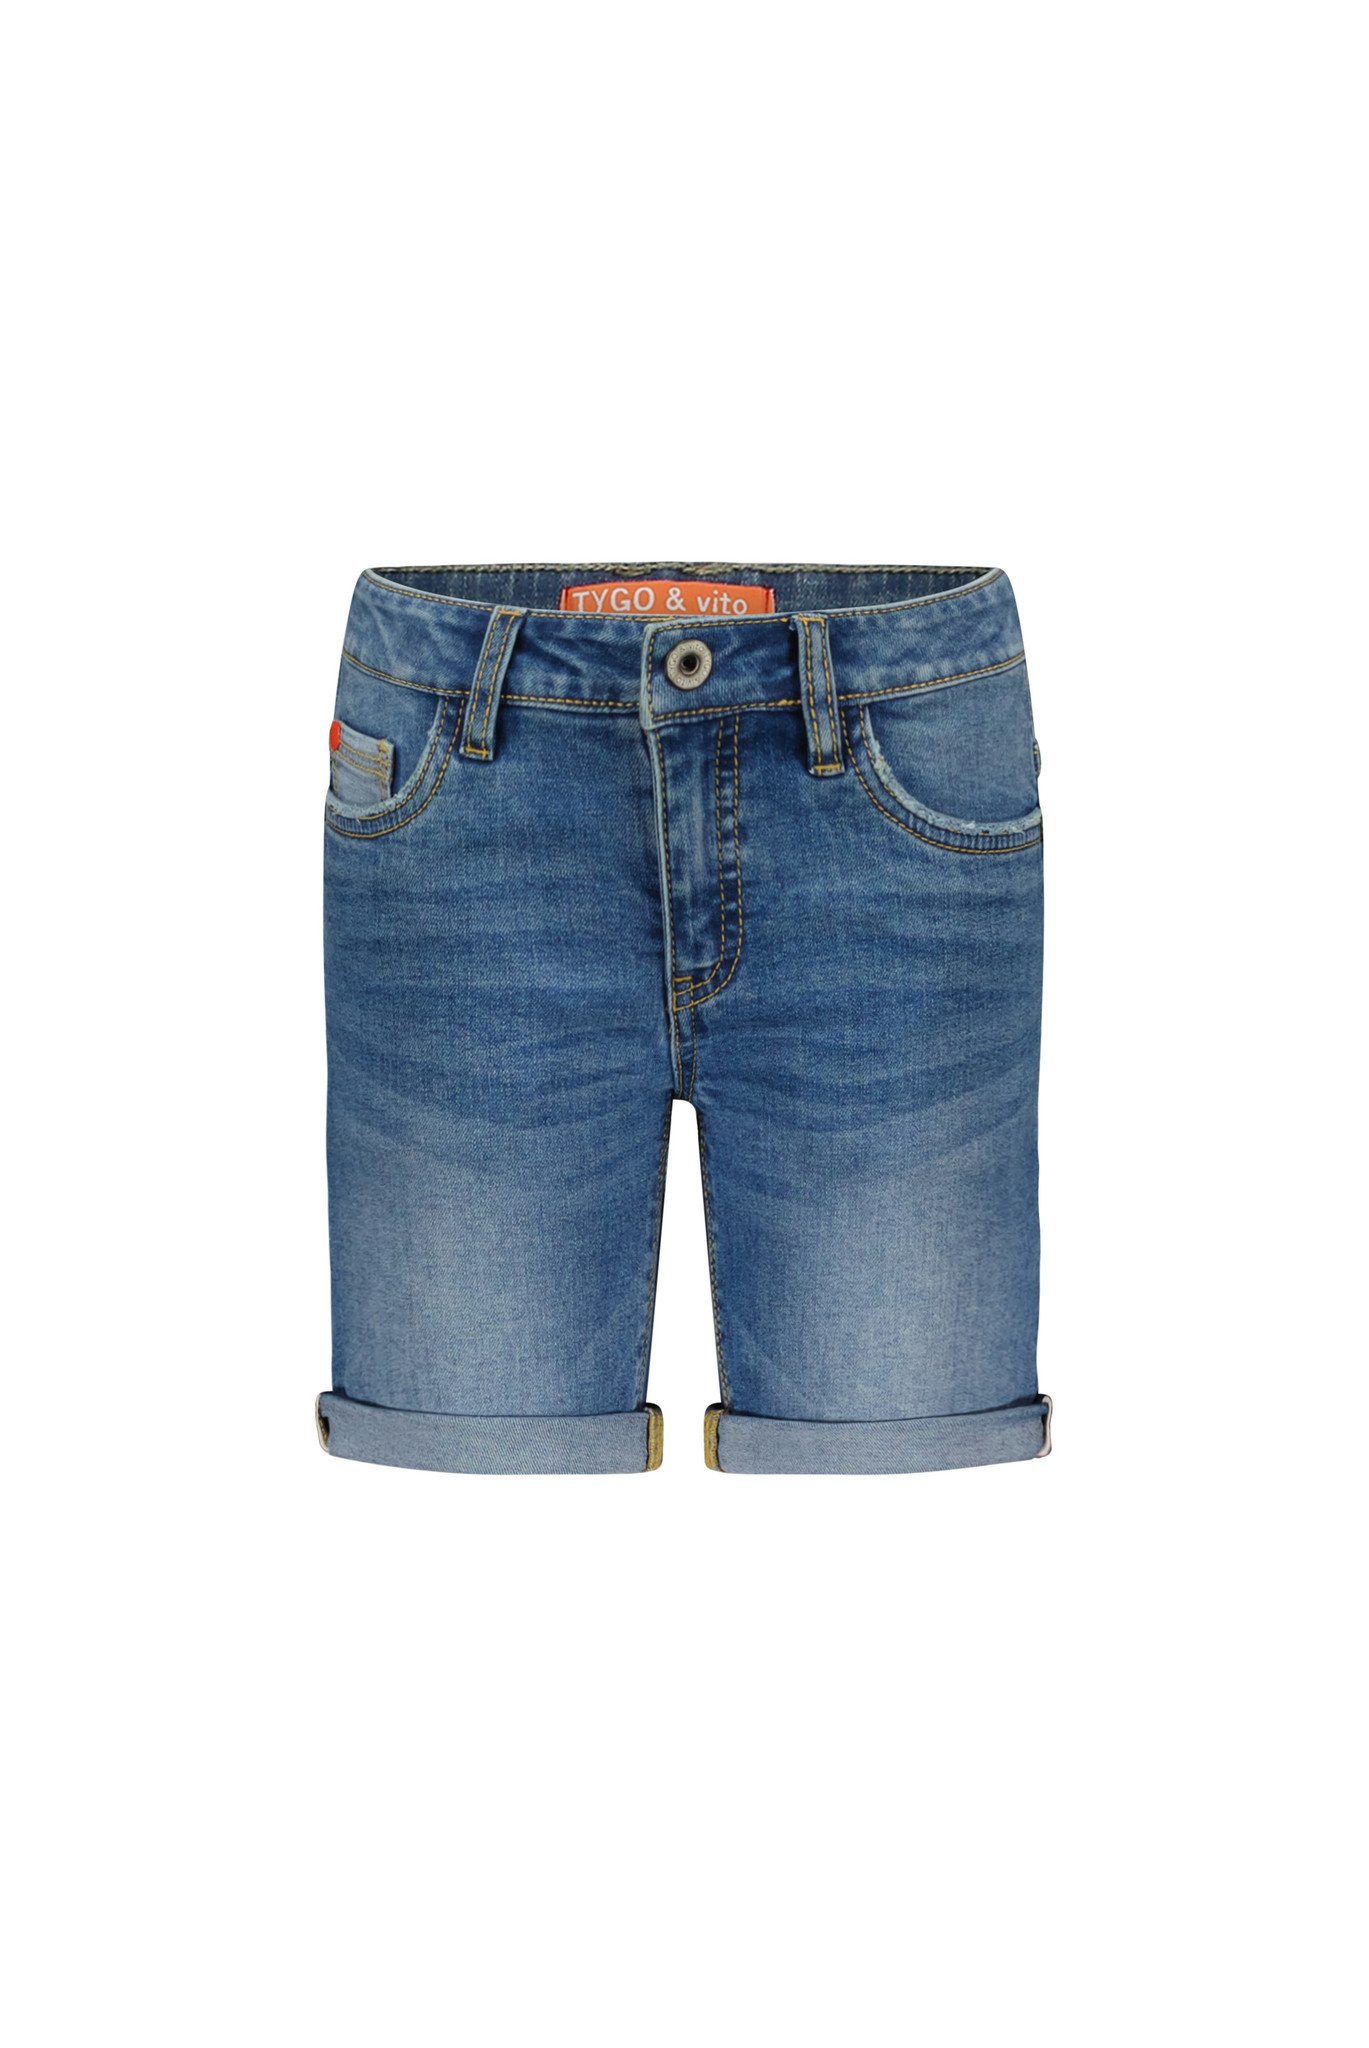 Tygo & Vito Jongens jeans short - Licht used